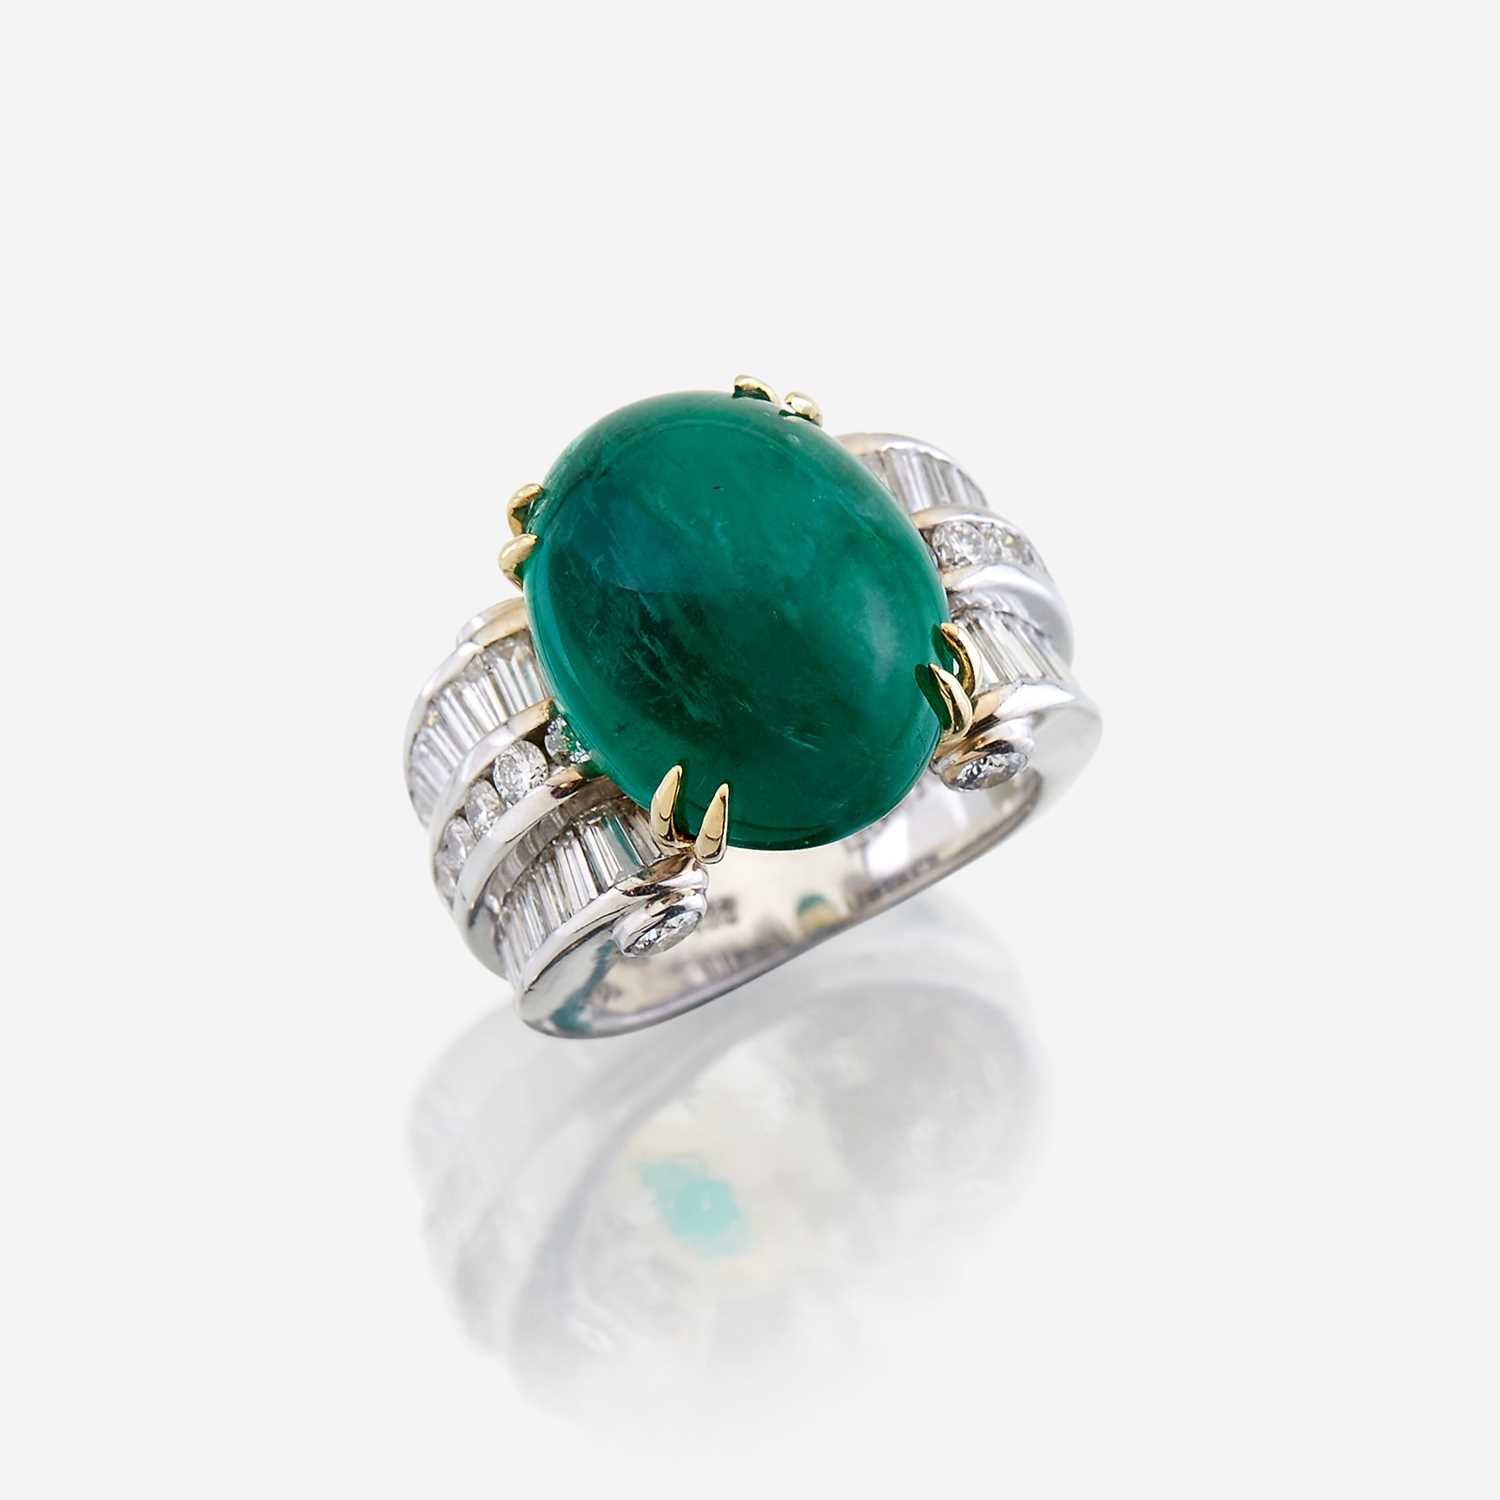 Lot 48 - An emerald, diamond, and eighteen karat white gold ring